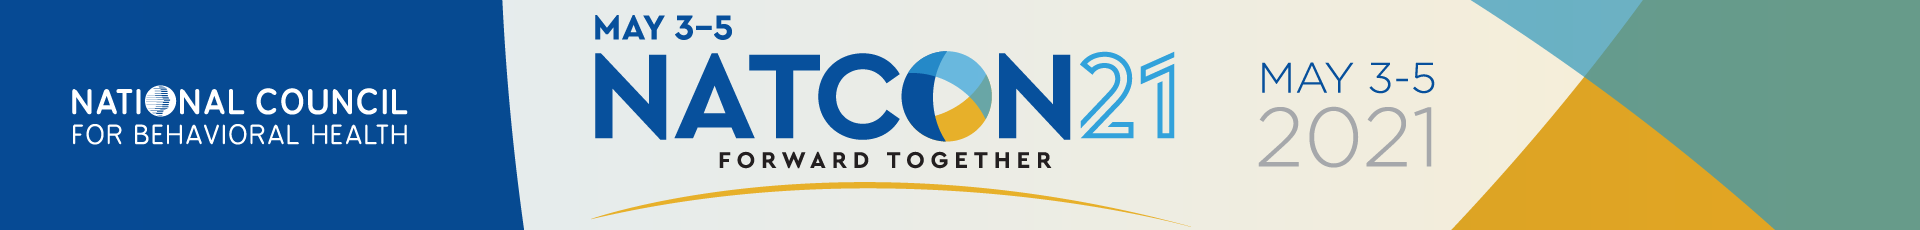 NatCon21 Event Banner